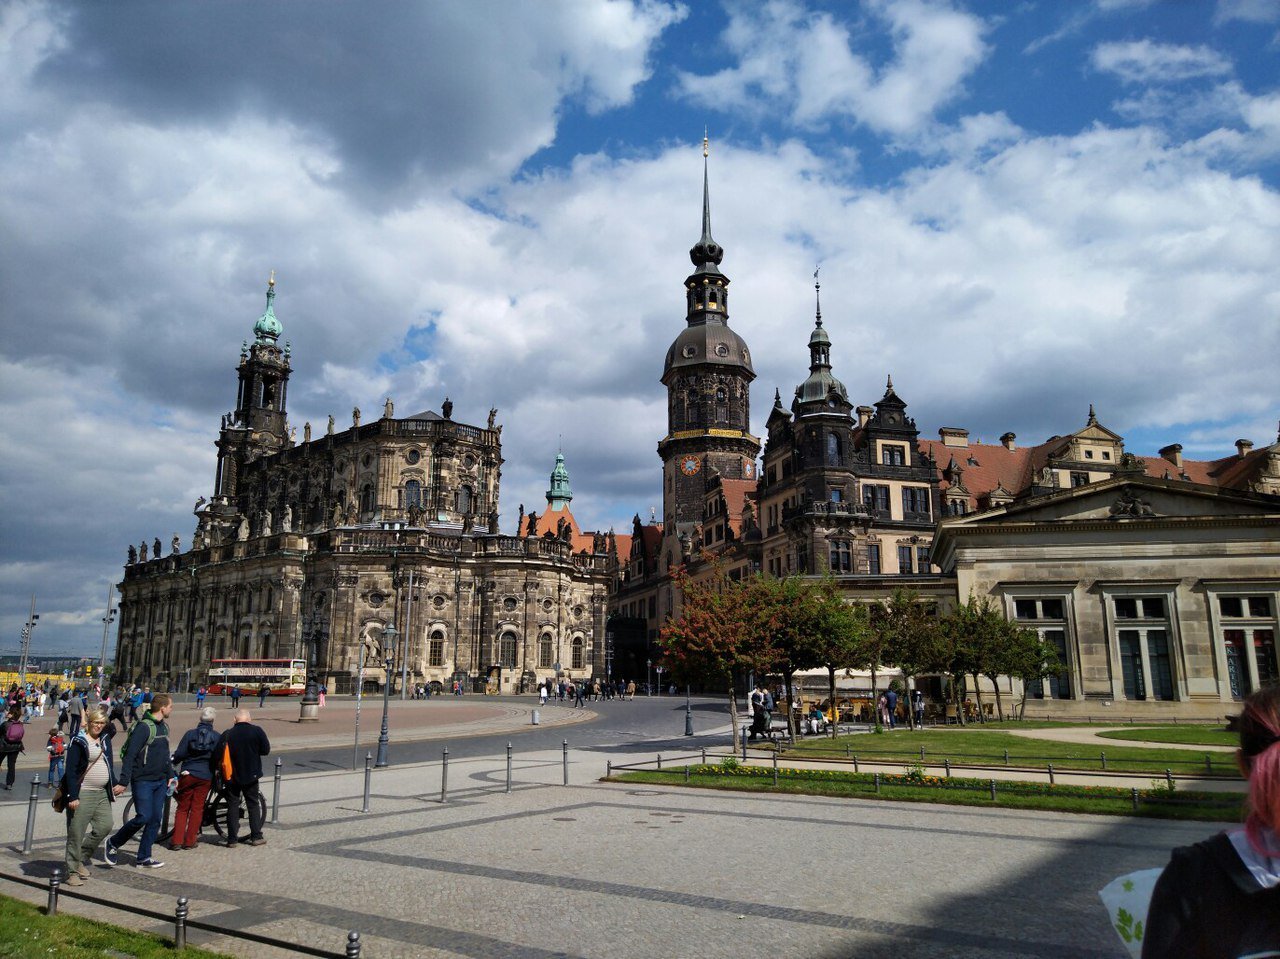 Дрезден это. Город Дрезден Цвингер. Дрезден юбигау. Дрезден старый город. Цвингер достопримечательности Дрездена.